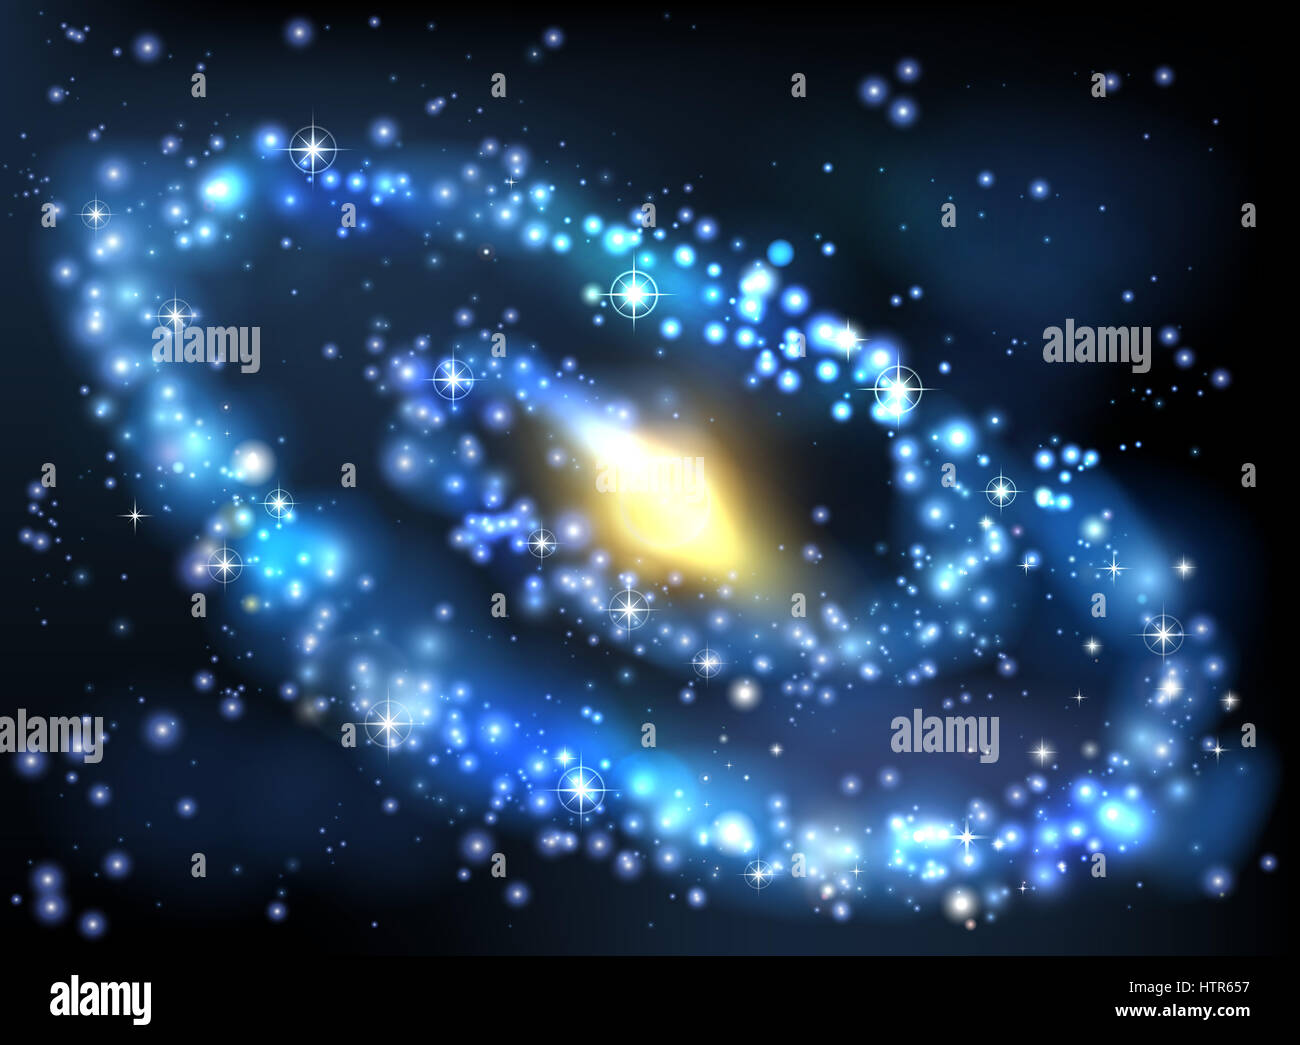 Una stelle dello spazio esterno con sfondo via lattea stile galassia a spirale Foto Stock